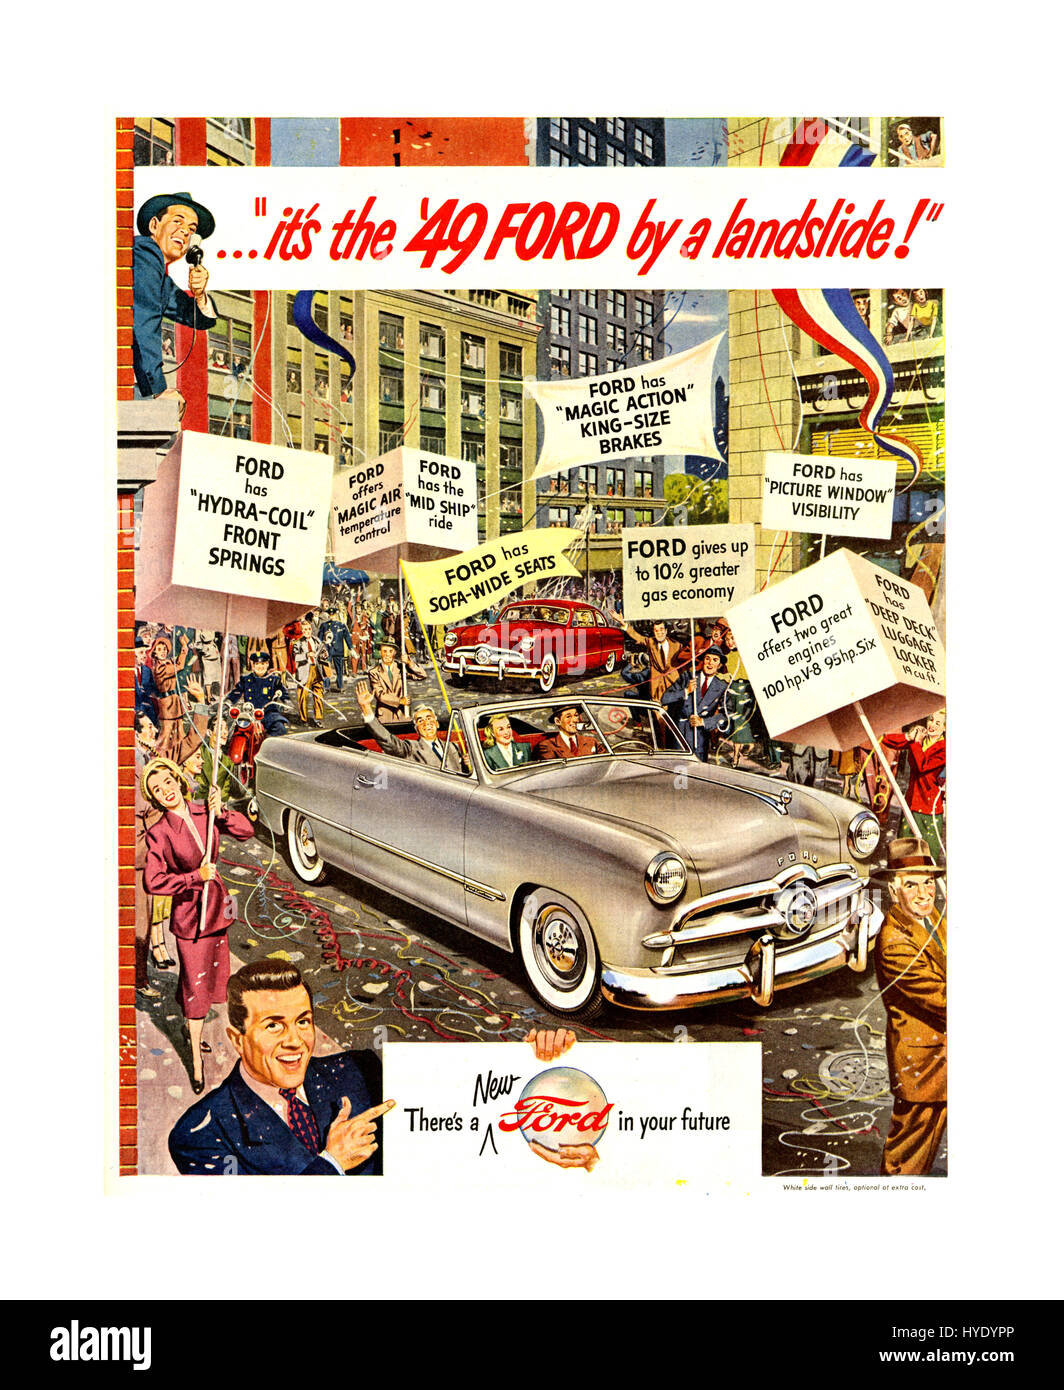 Retro Vintage des années 1940 affiche publicitaire automobile Ford Ford d'après-guerre 1949 publicité "c'est la Ford '49 Ford par un glissement !' Location de matériel promotionnel Affiche publicitaire Banque D'Images